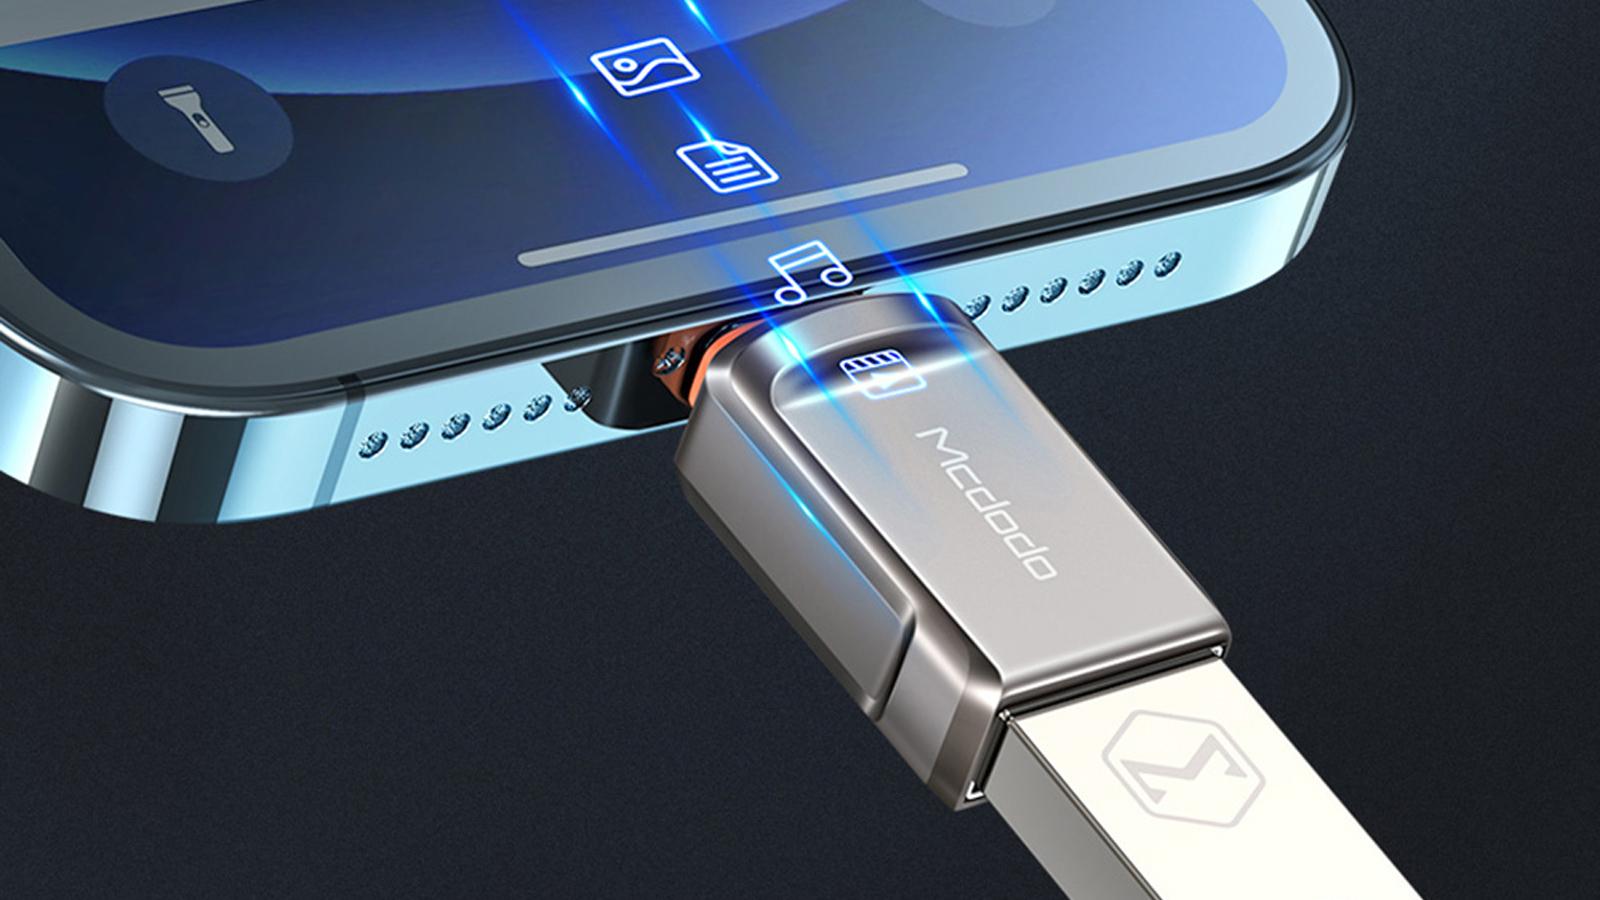 قیمت و خرید مبدل USB به لایتینینگ مک دودو مدل OT-8600